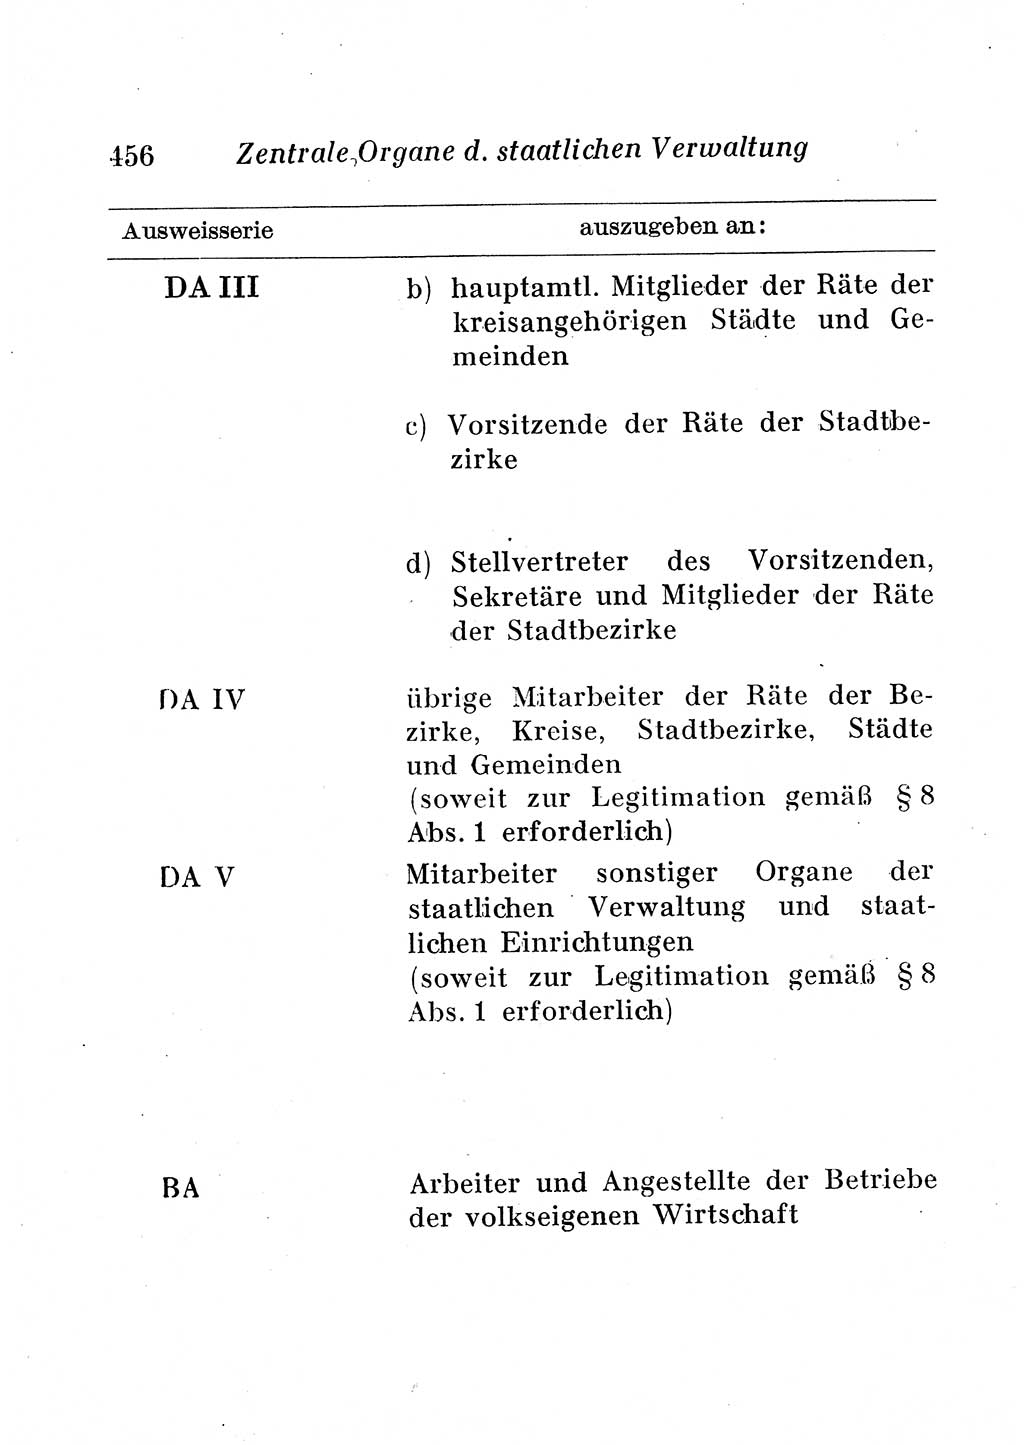 Staats- und verwaltungsrechtliche Gesetze der Deutschen Demokratischen Republik (DDR) 1958, Seite 456 (StVerwR Ges. DDR 1958, S. 456)